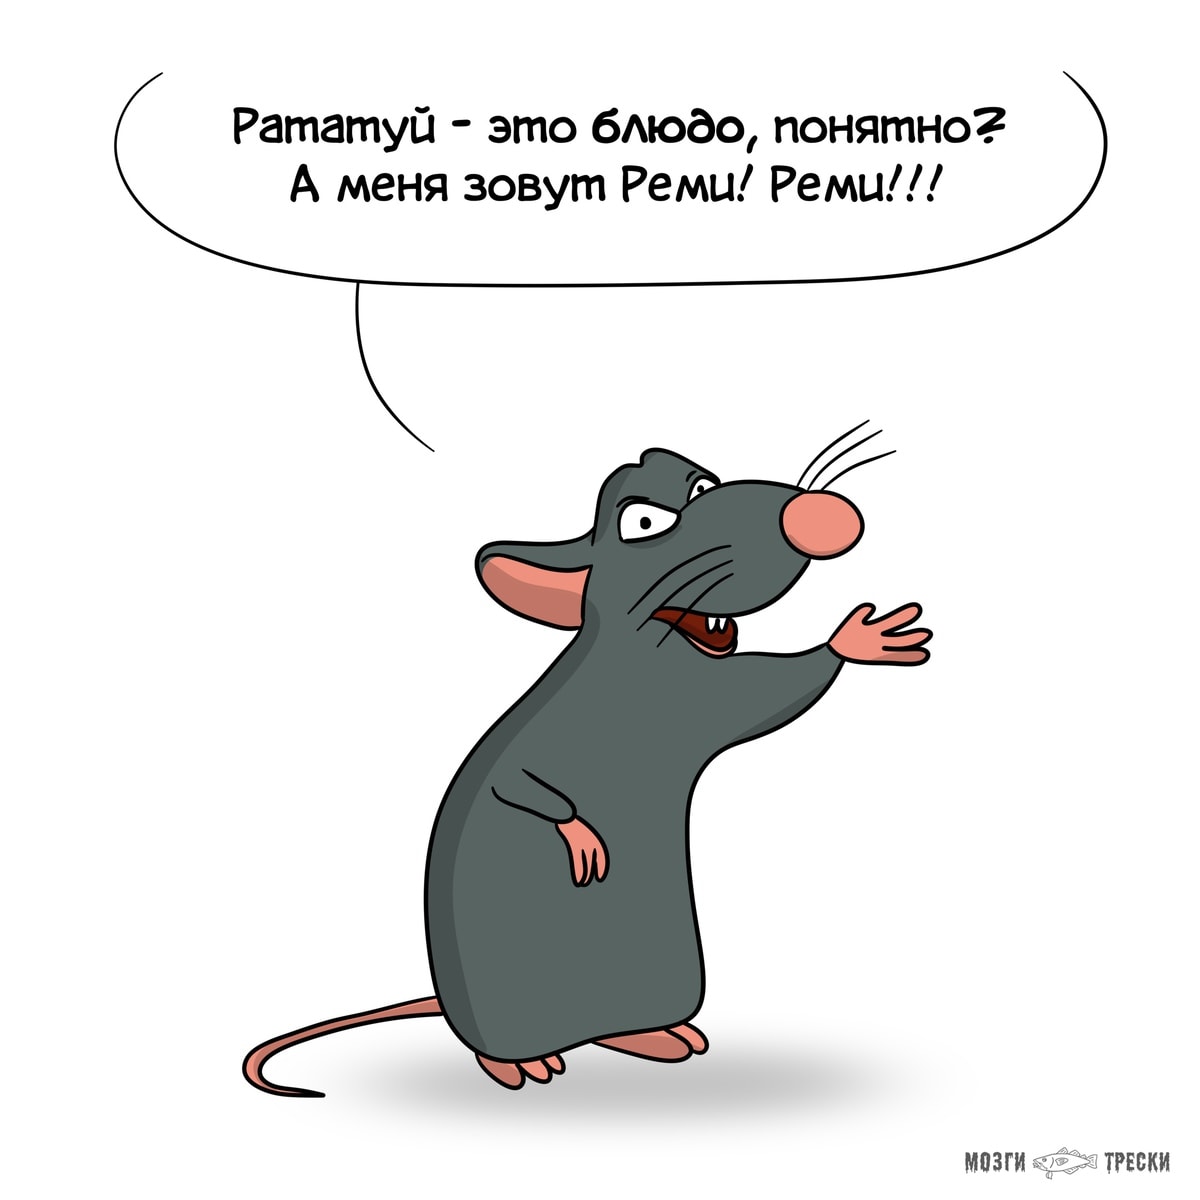 Автор комиксов «Мозги трески» представил, какие проблемы волнуют известных мультяшных крыс и мышей 35